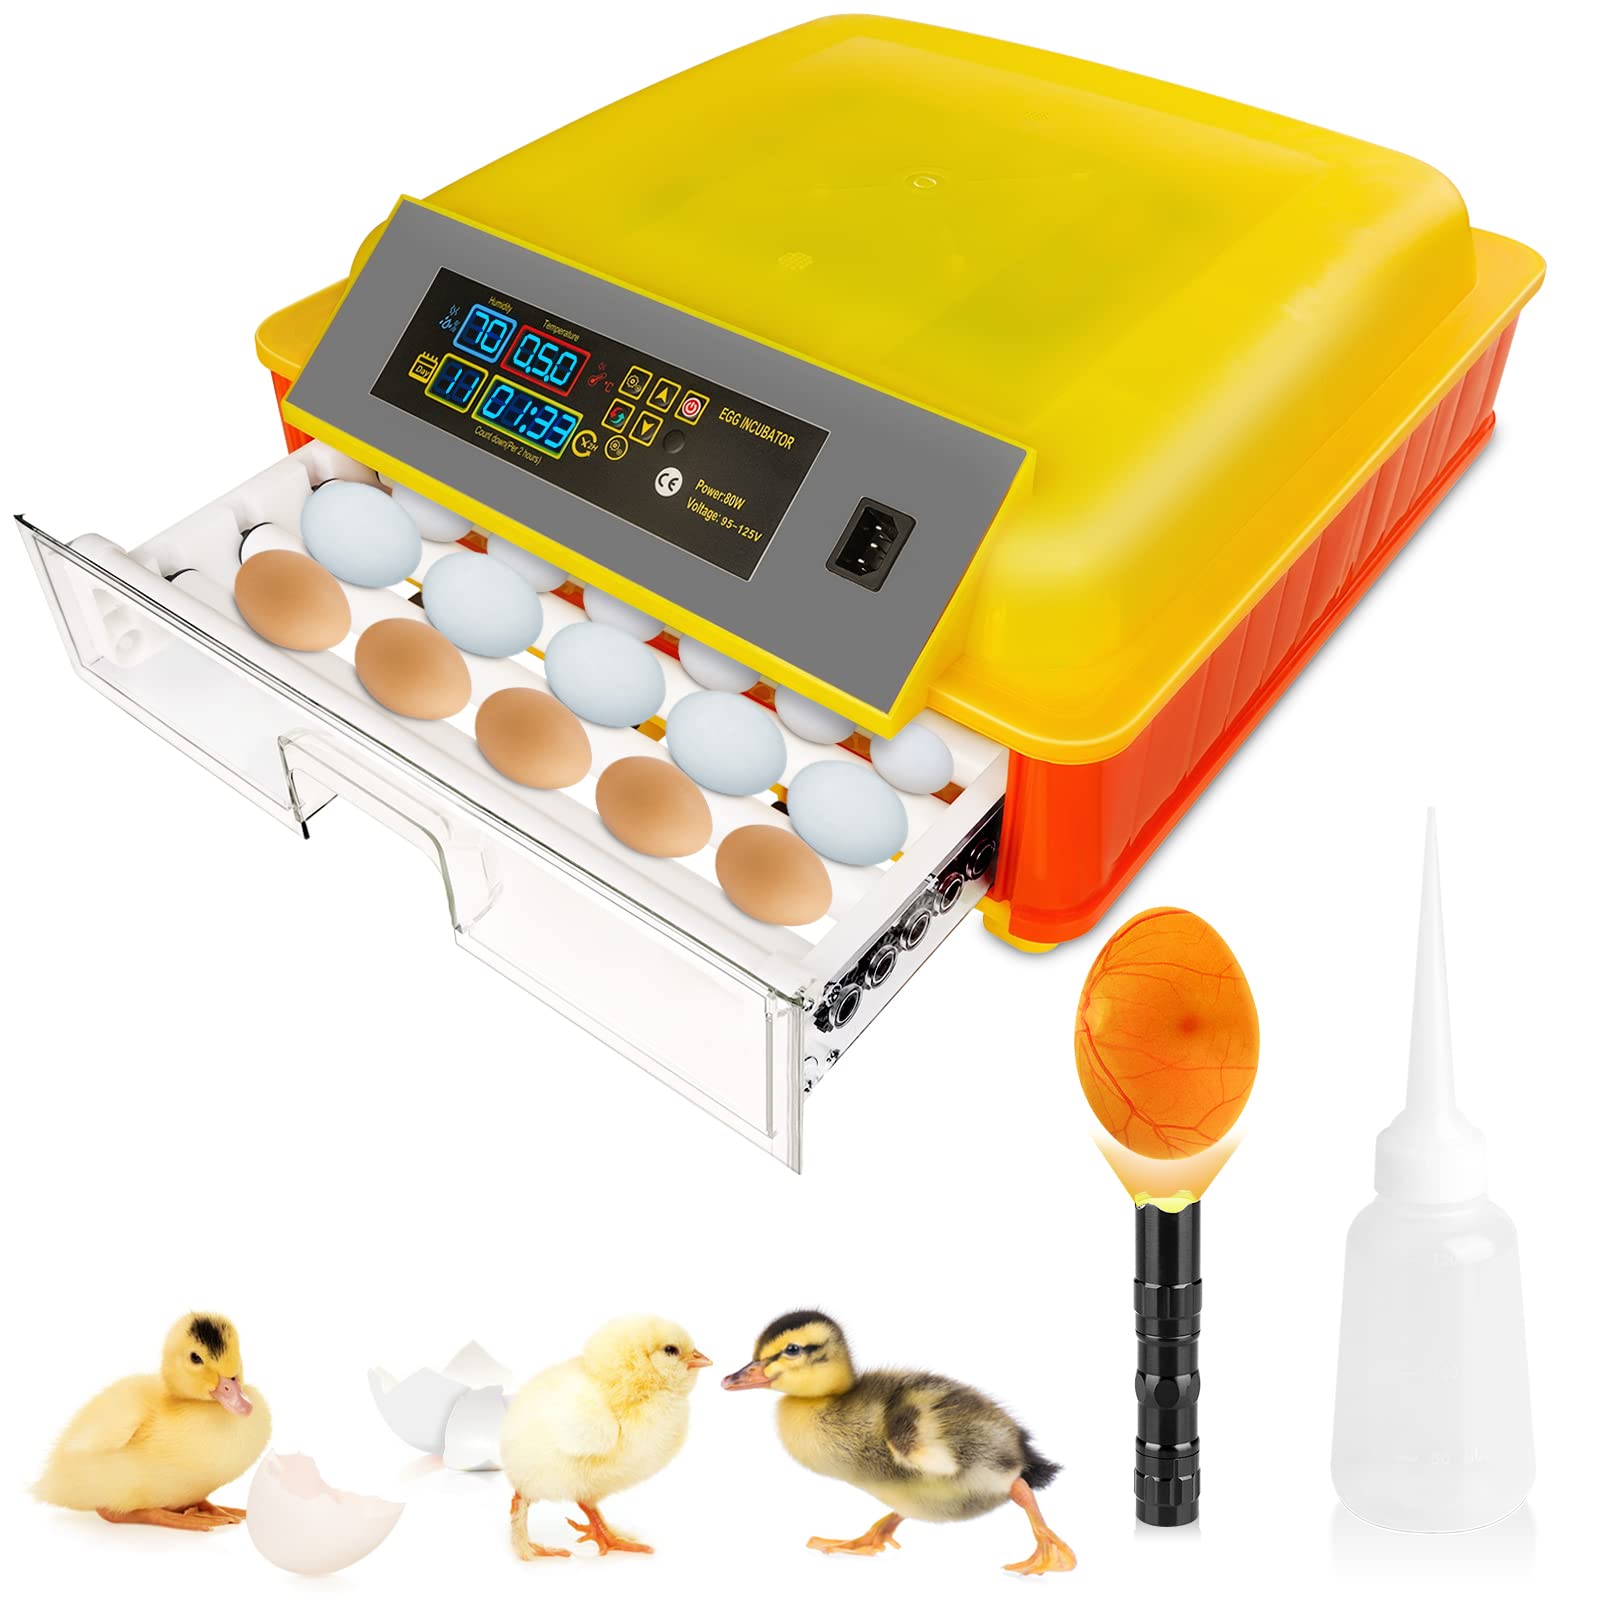 46 Инкубатор за јаја за валење, аутоматски окретач јаја са контролом температуре и праћењем влажности Професионални инкубатор за живину за ваљење пилетине патка препелица гуска птичје јаје